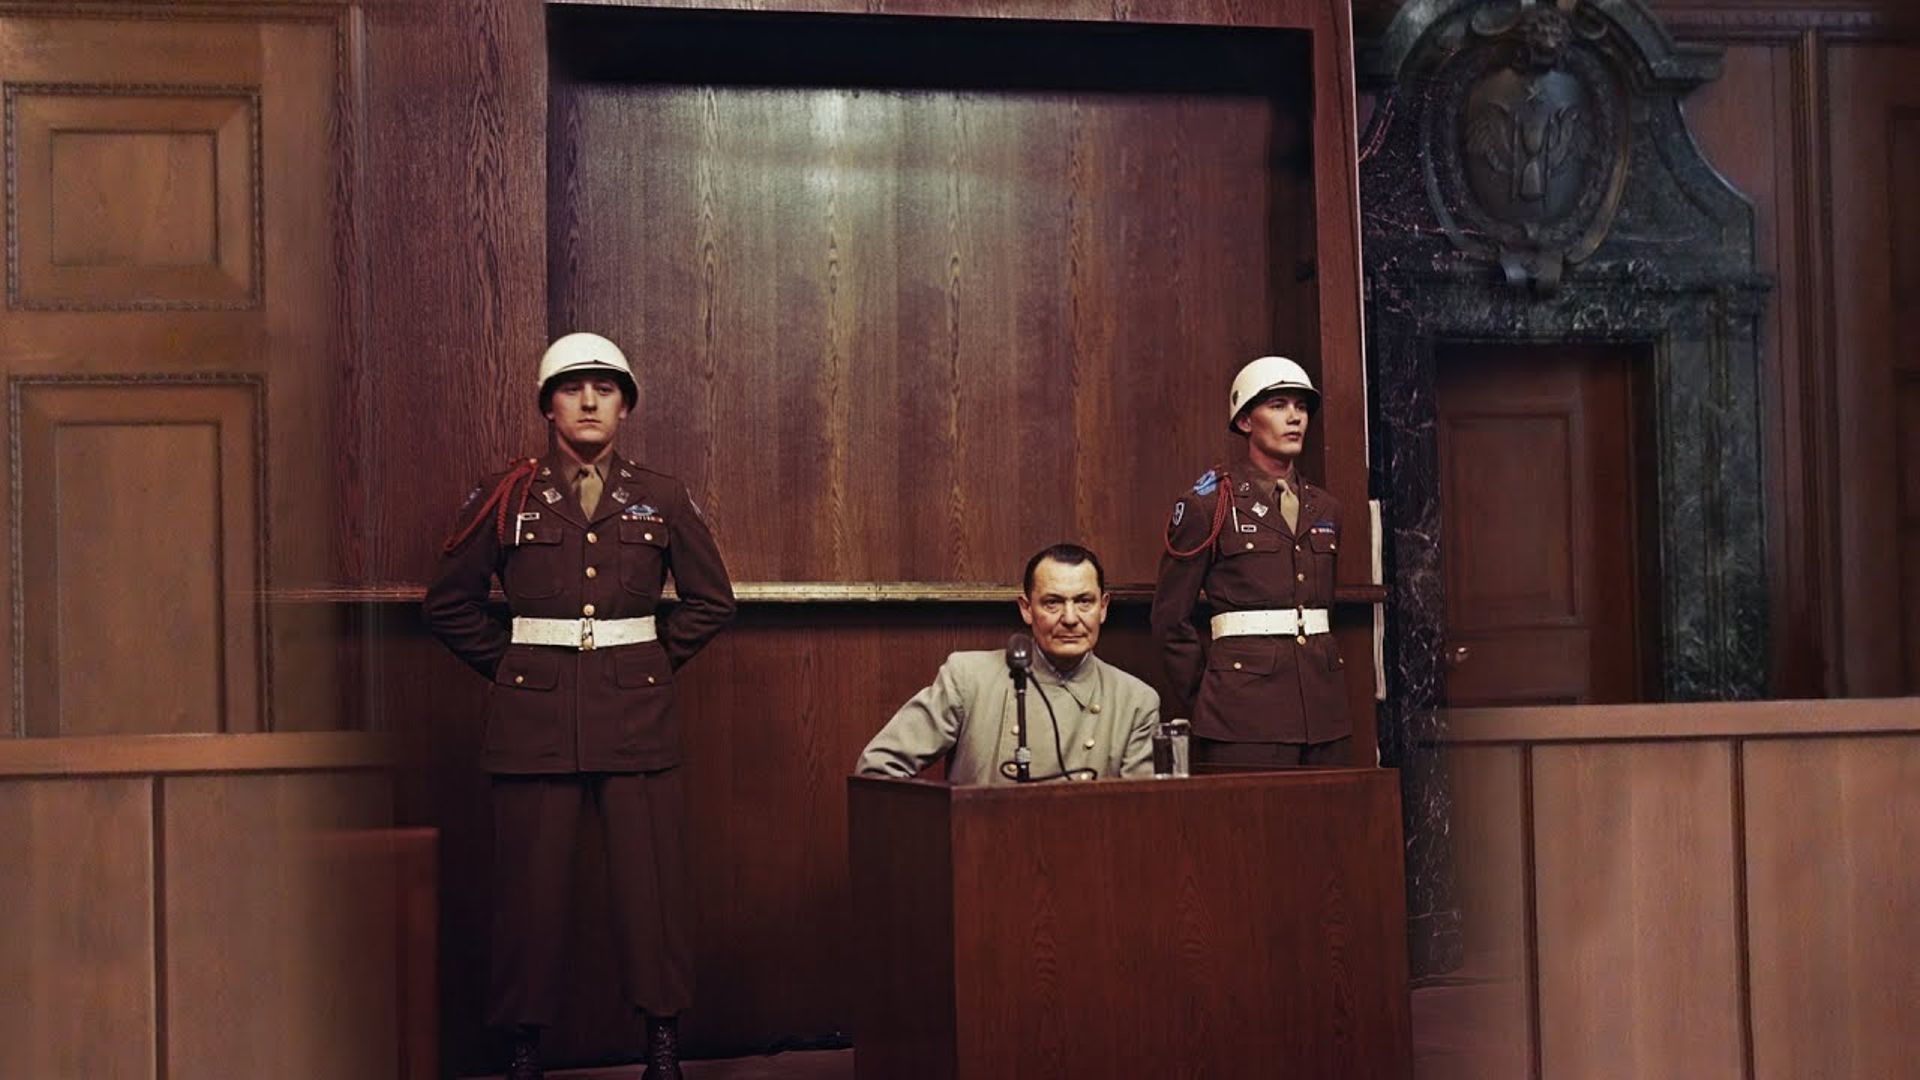 Nürnberg Now & Then - Episode 15: Trials | Judgement